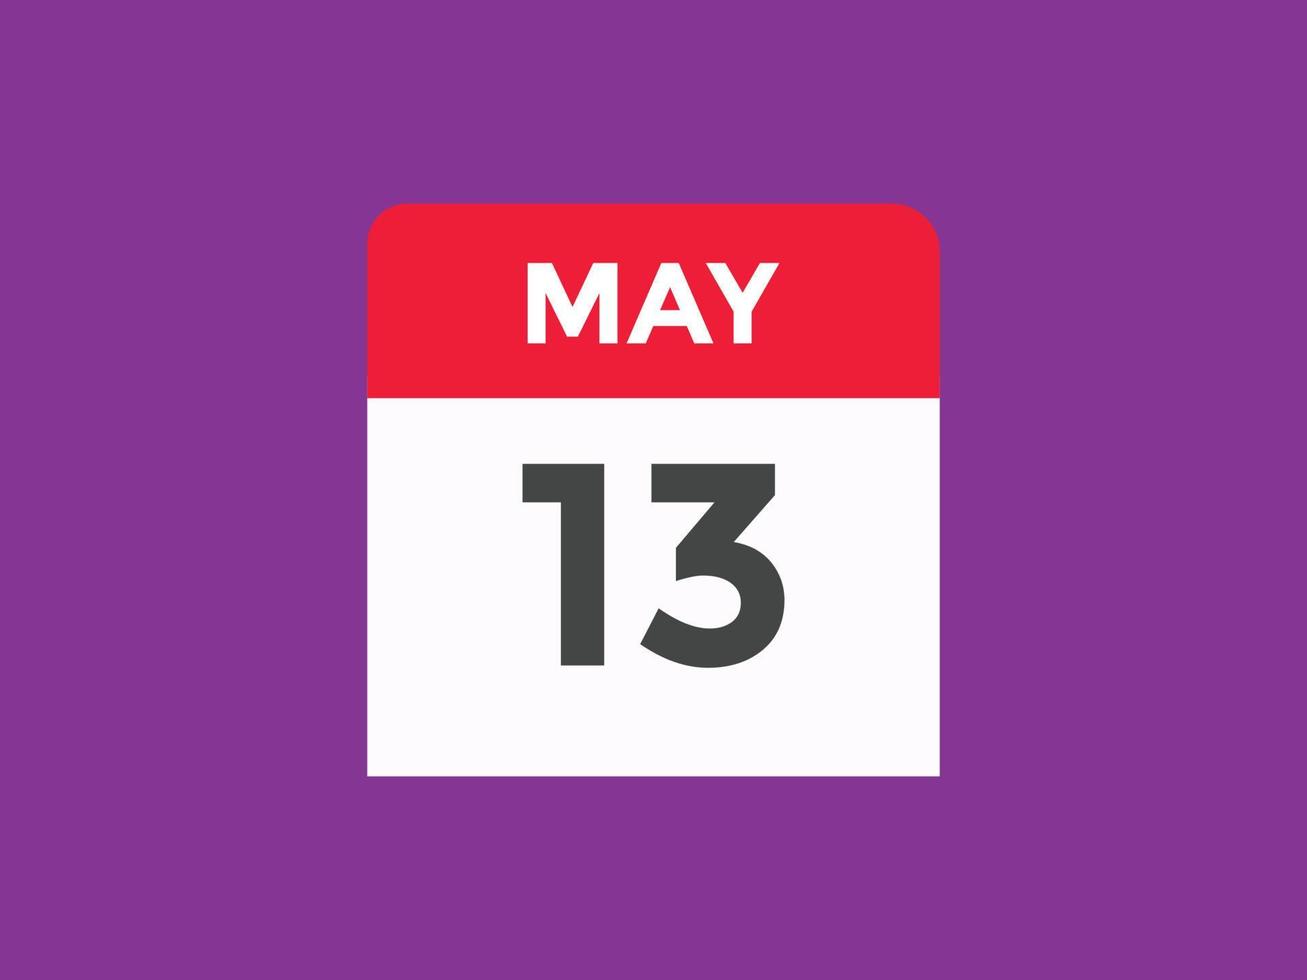 Maj 13 kalender påminnelse. 13: e Maj dagligen kalender ikon mall. kalender 13: e Maj ikon design mall. vektor illustration